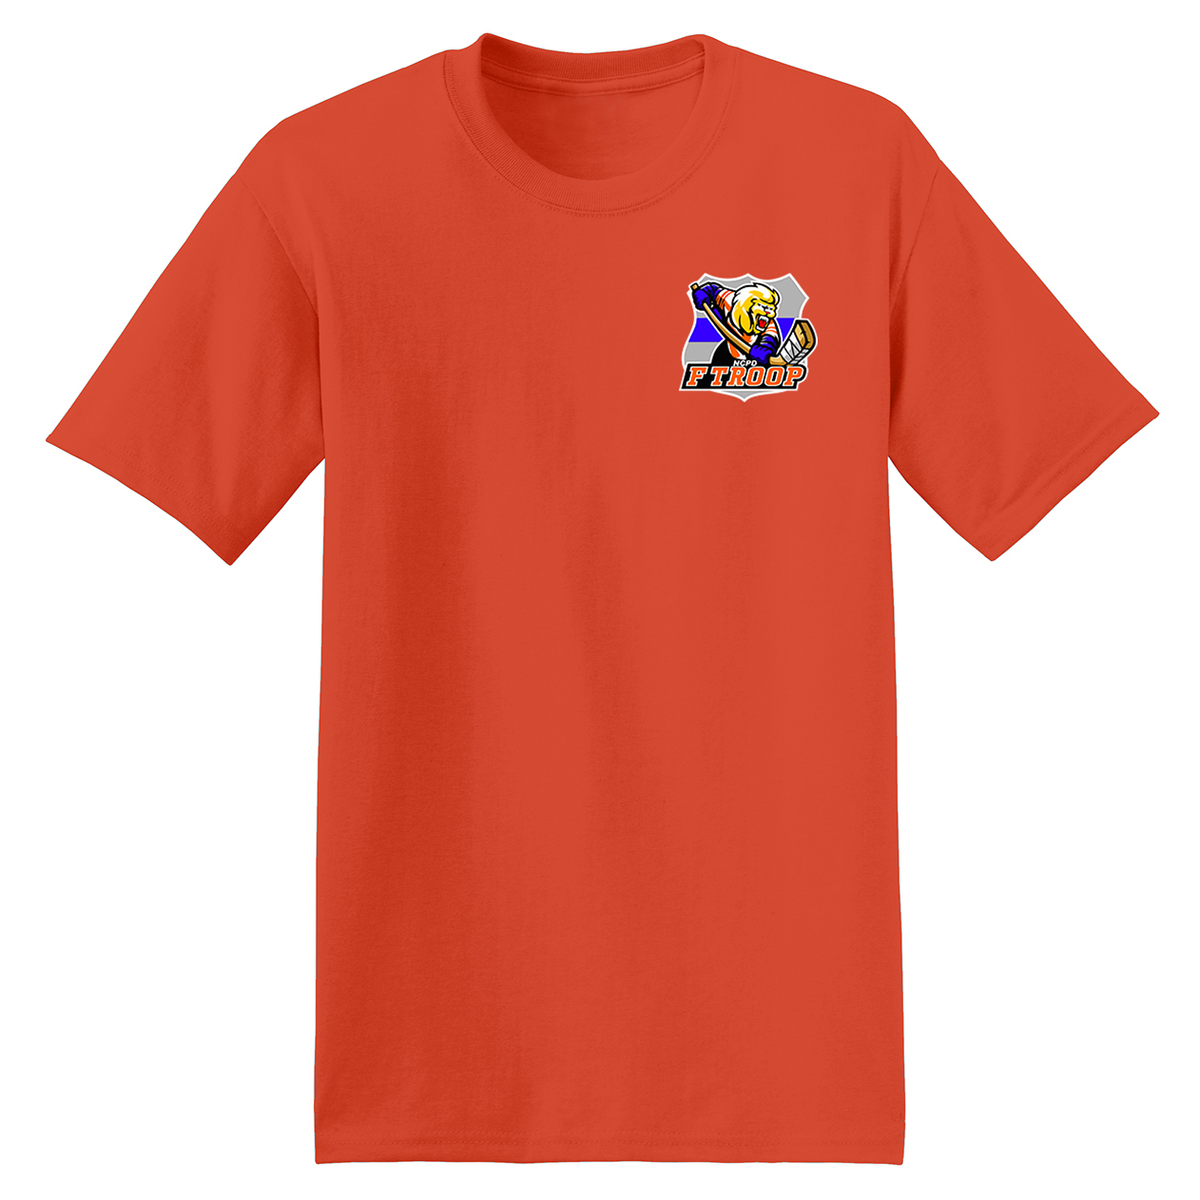 F Troop Hockey T-Shirt